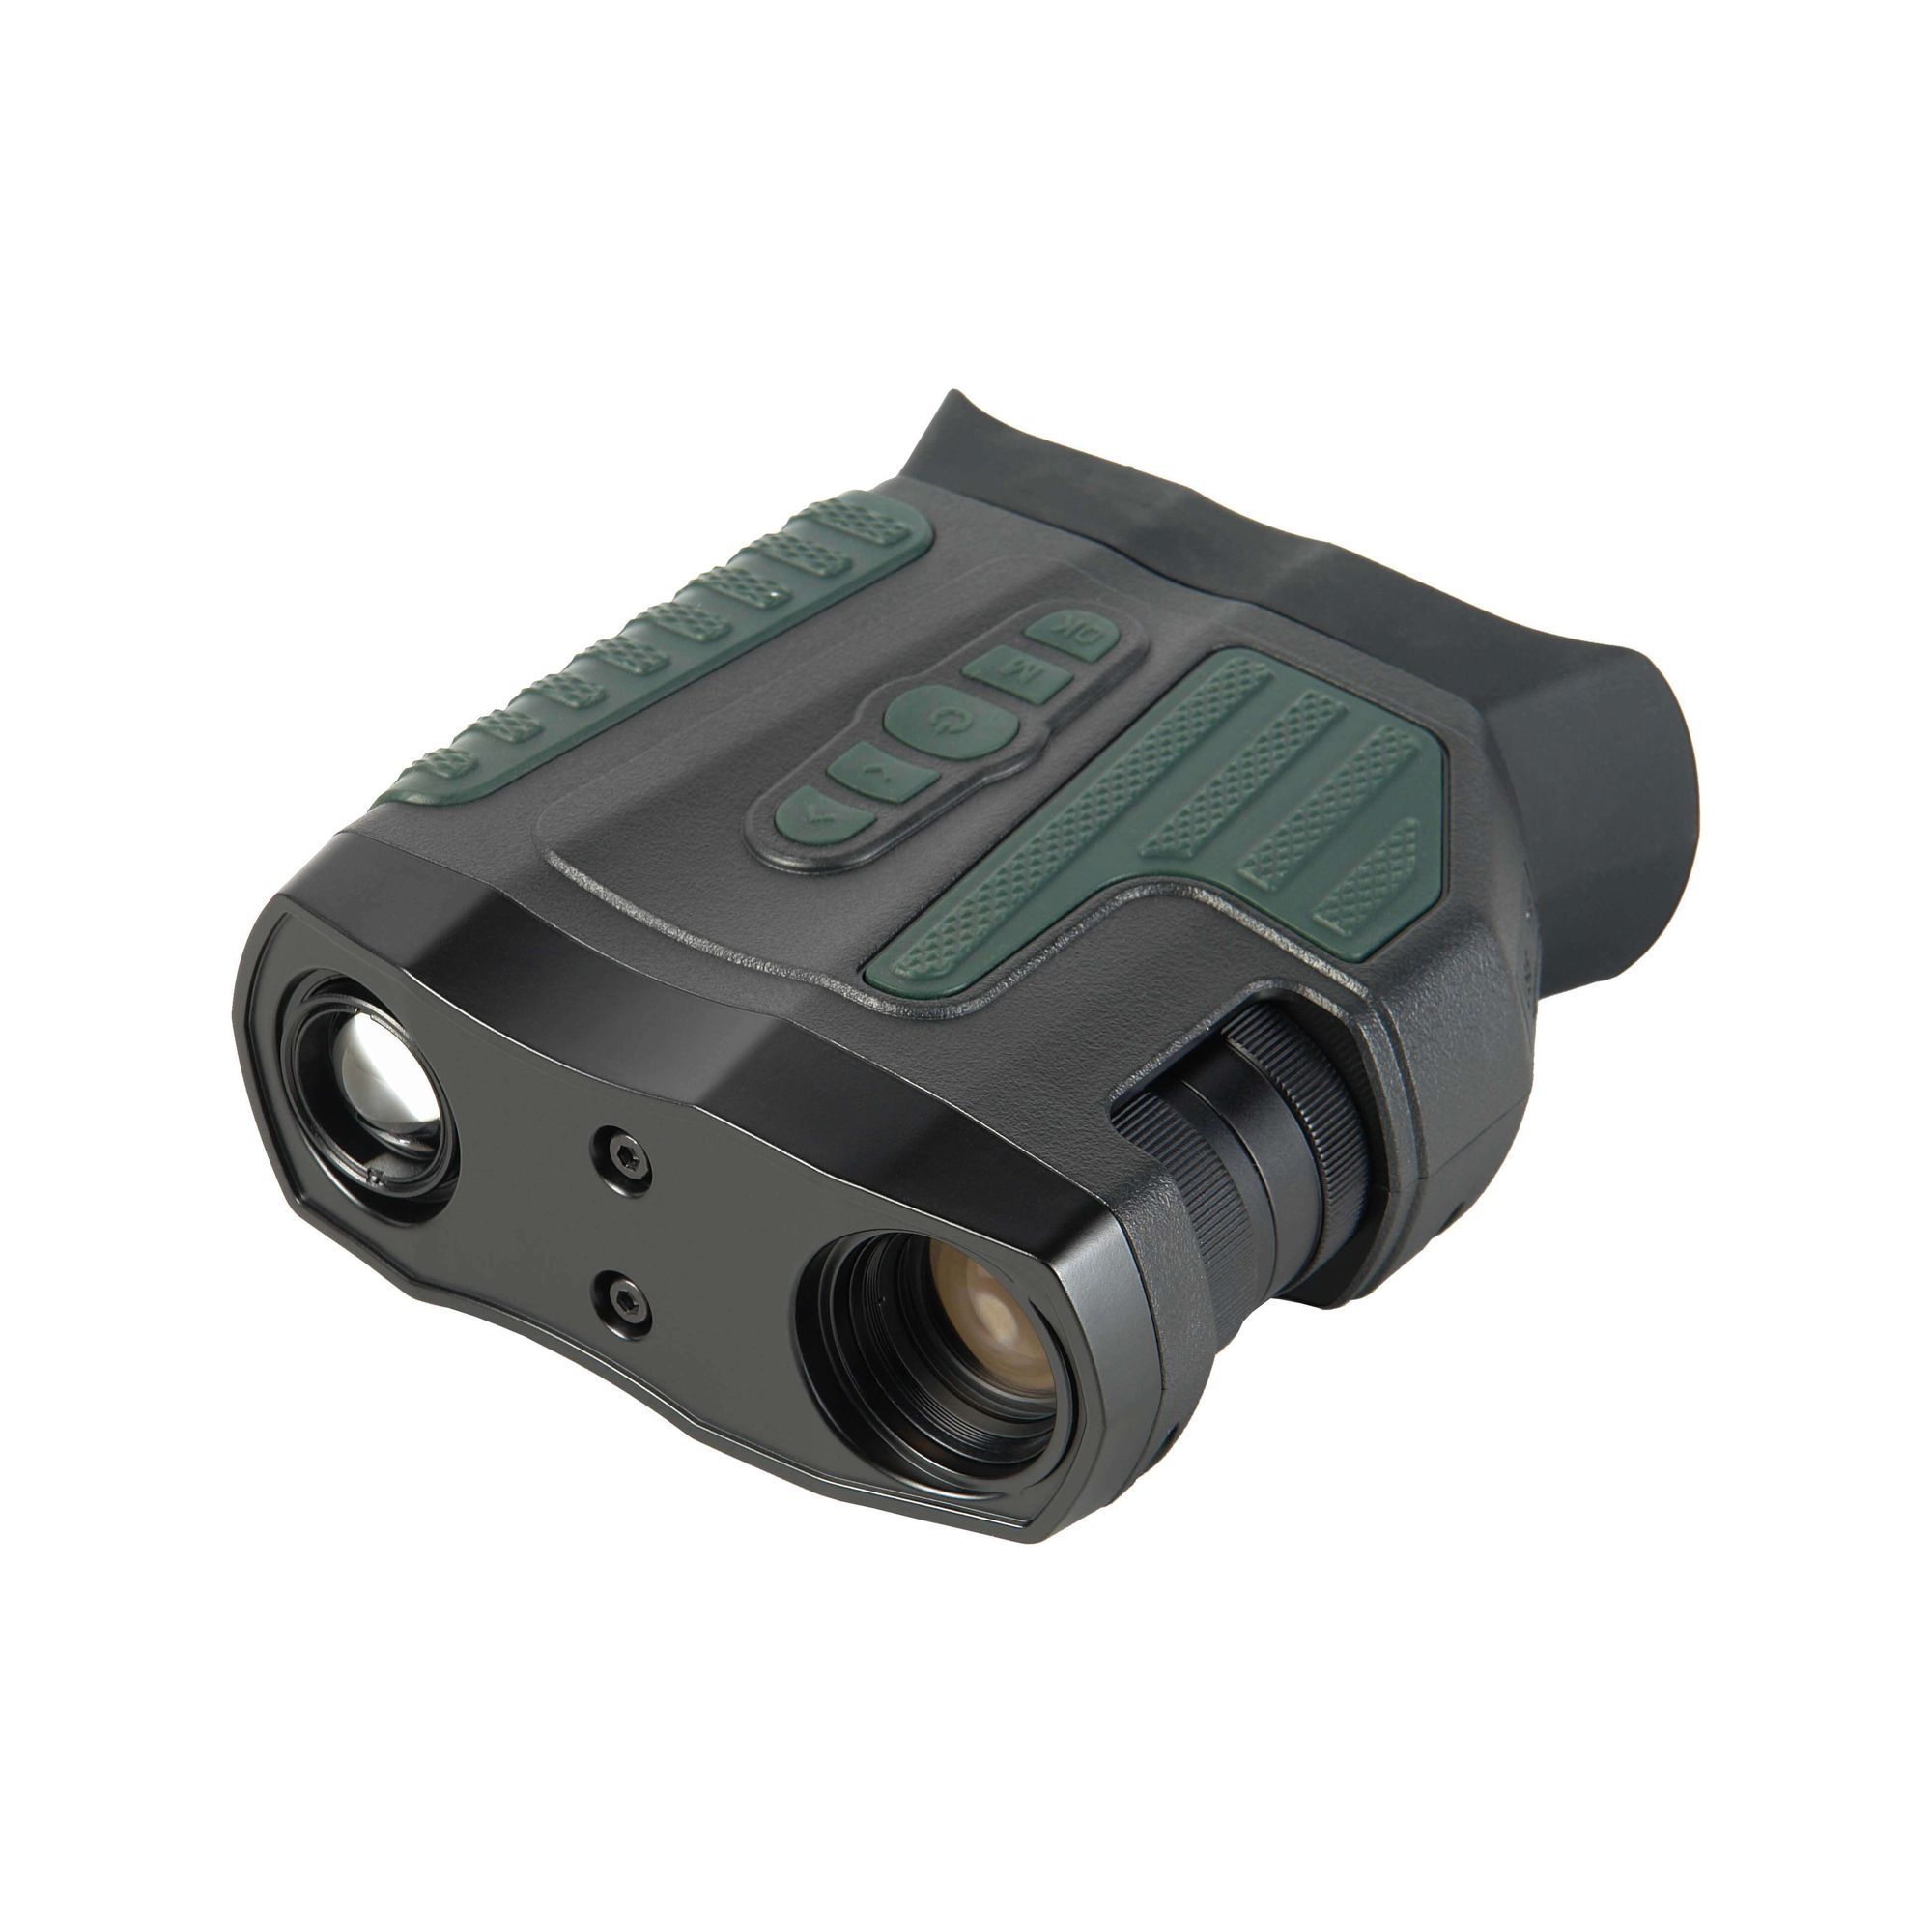 Бинокль ночного видения Veber NVB 080FHD цифровой бинокль дневного и ночного видения binoculars 30 60 мм